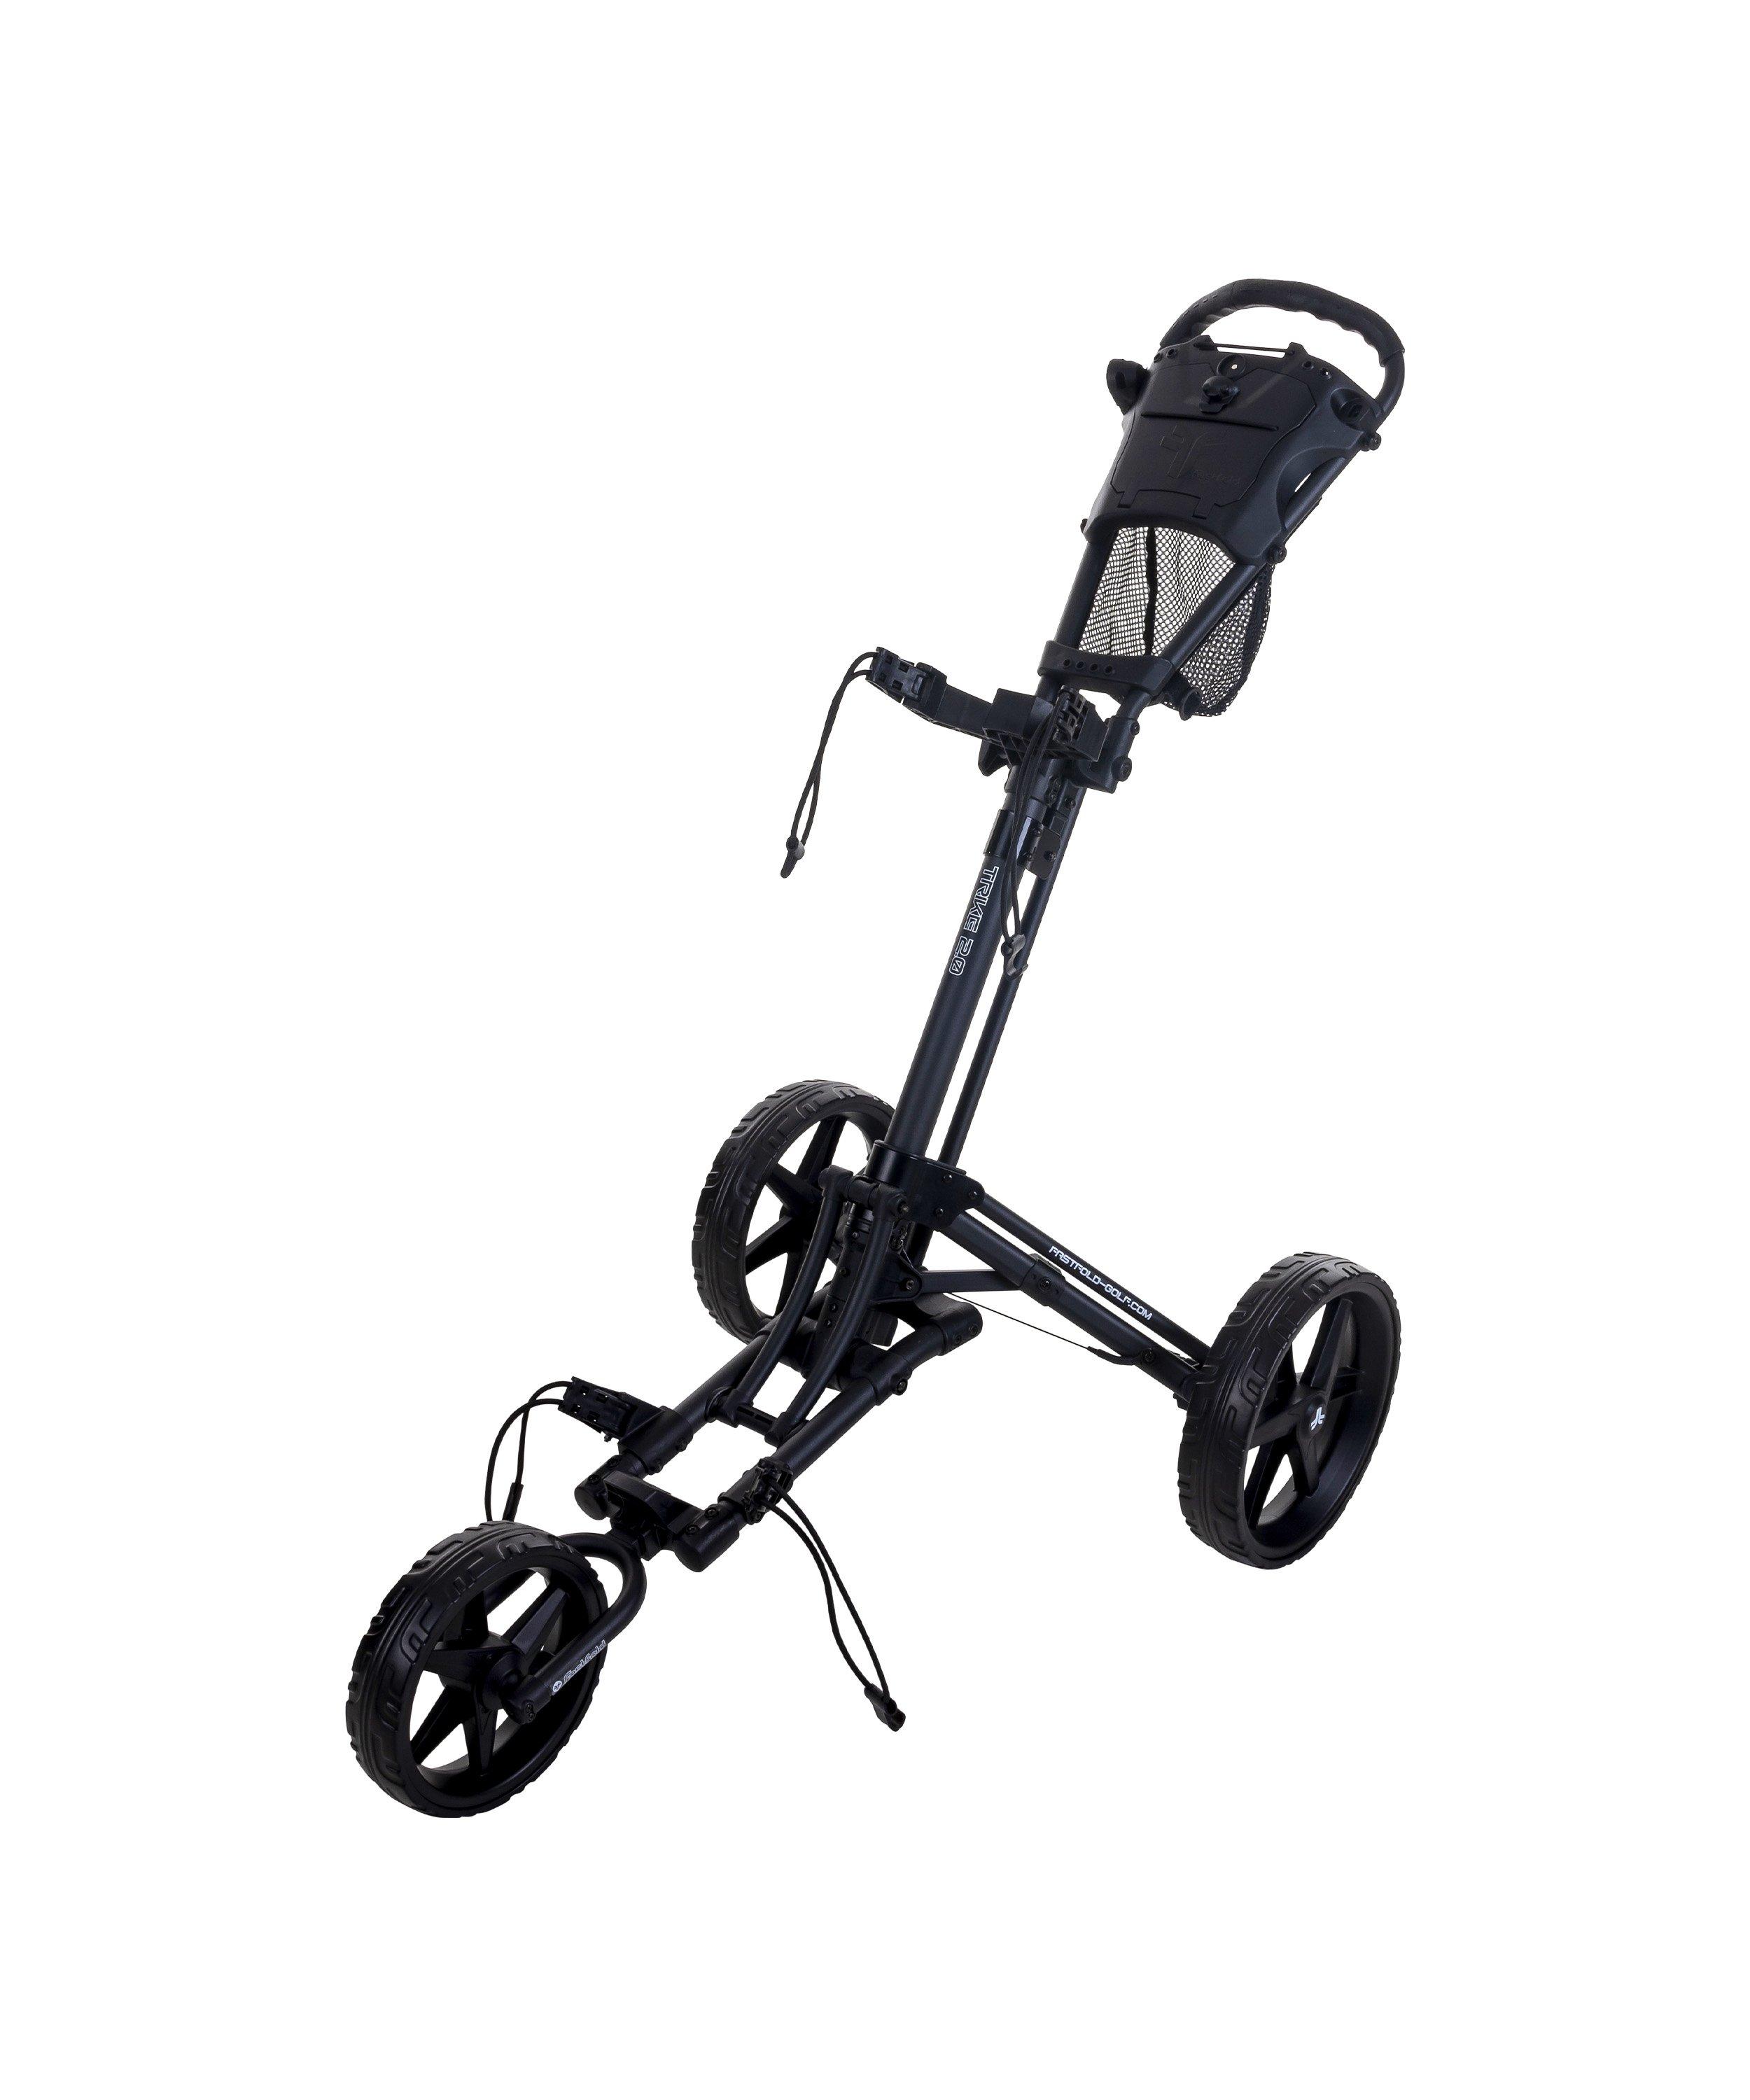 Trike 2.0 Golf Trolley